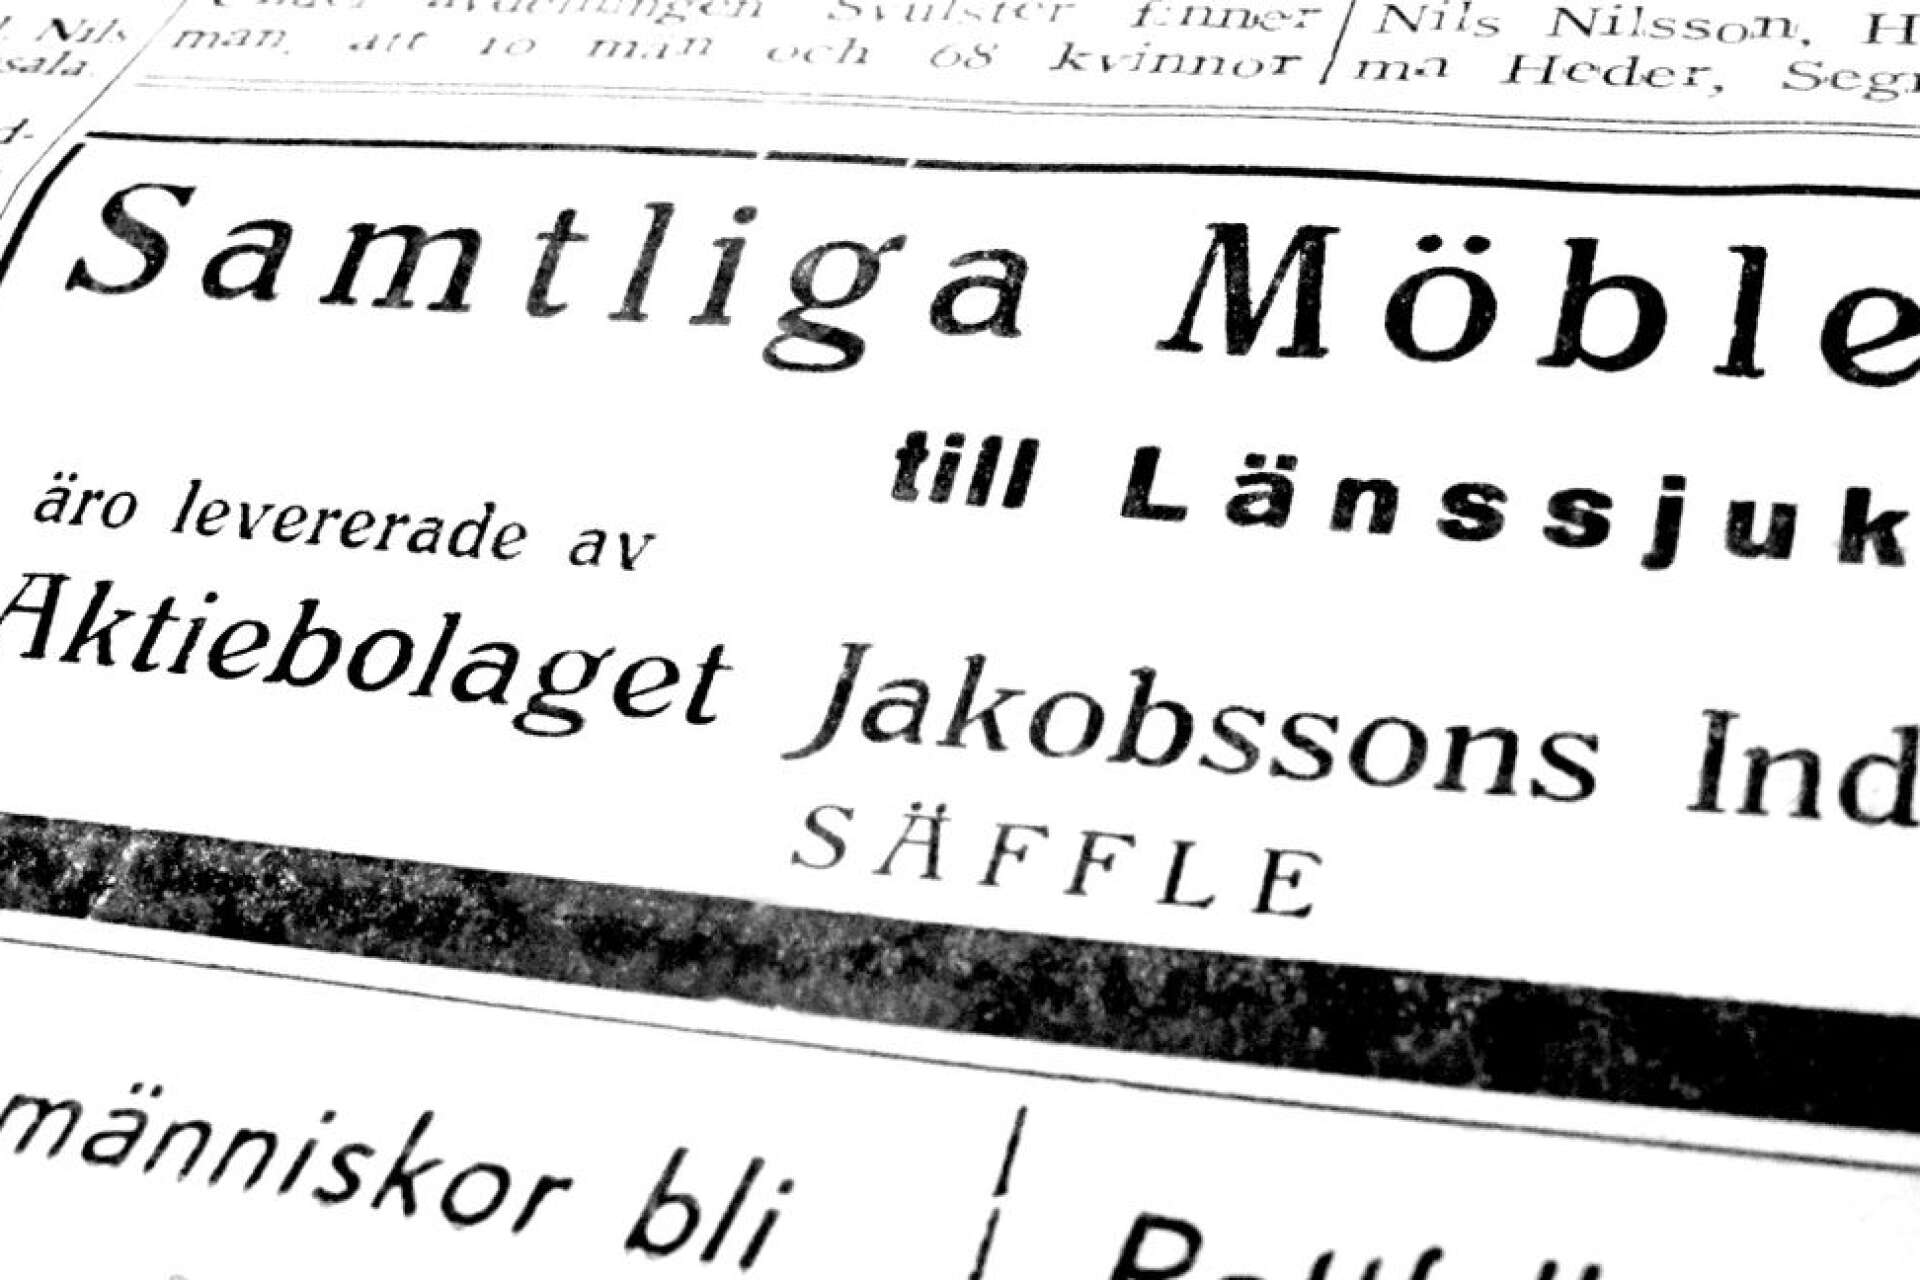  När nya länssjukhuset i Säffle stod färdigt 1940 hade samtliga möbler levererats av Jakobssons Industrier. 